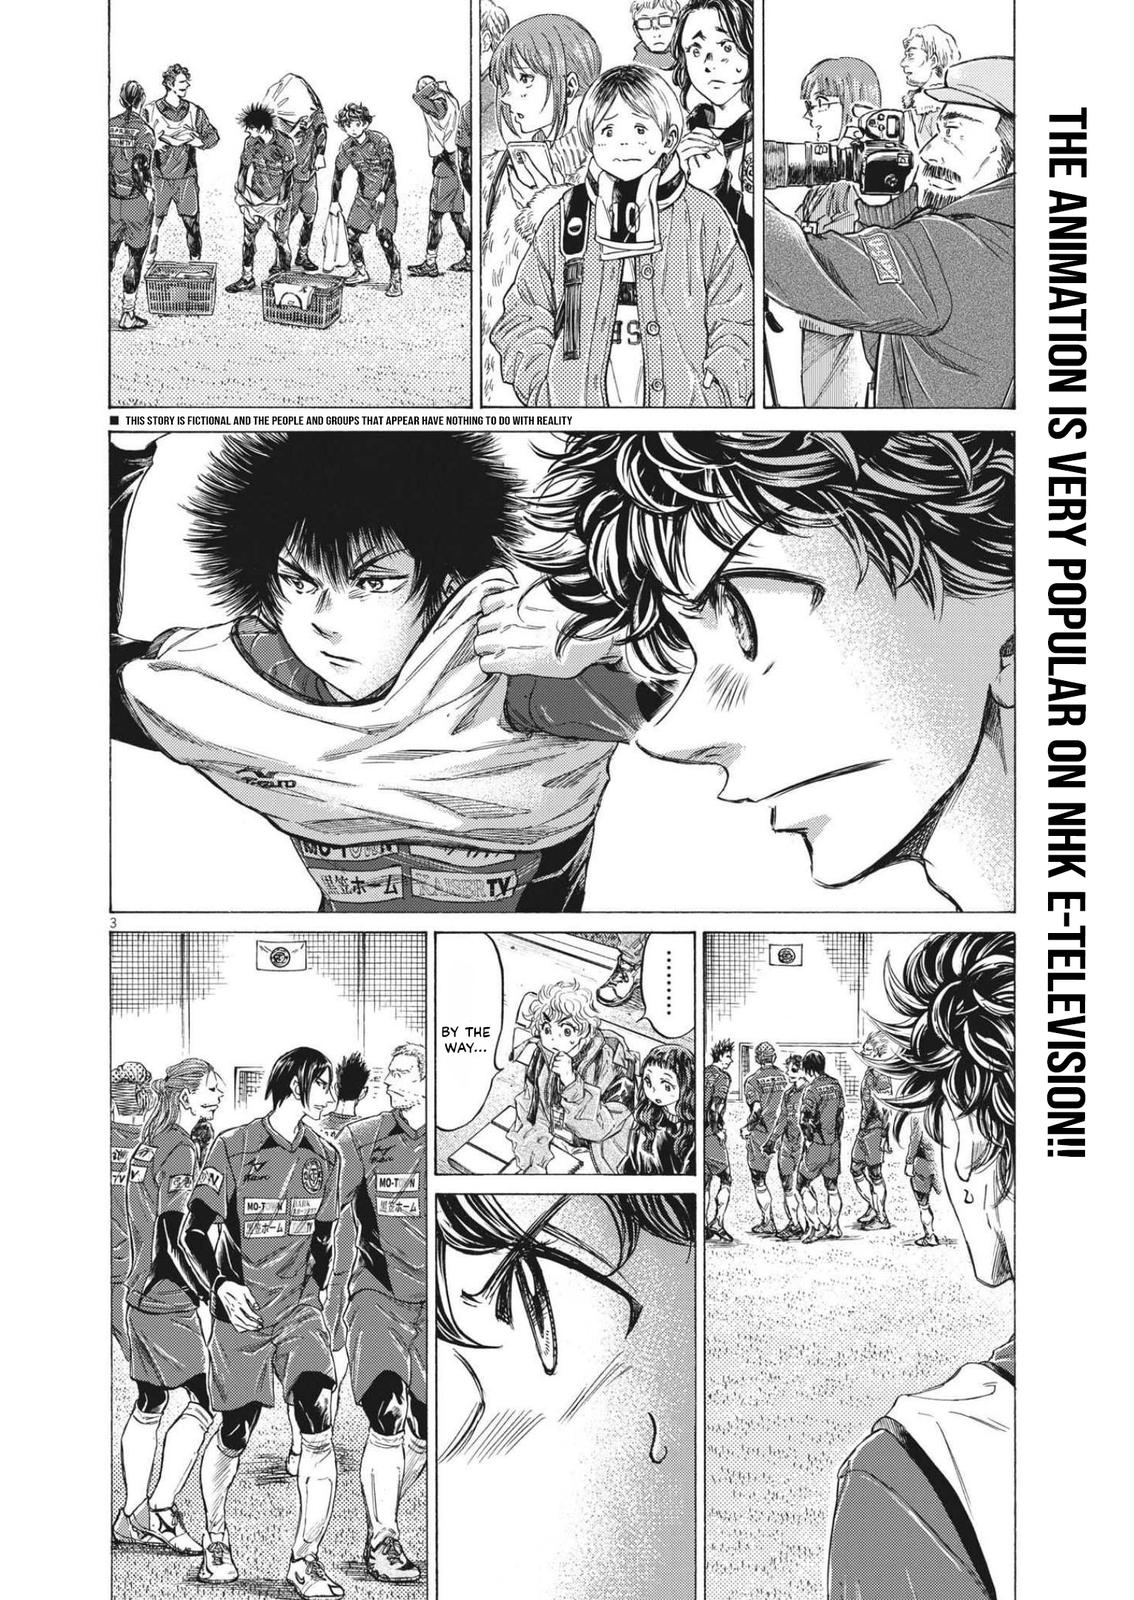 Ao Ashi, Chapter 346 - Ao Ashi Manga Online